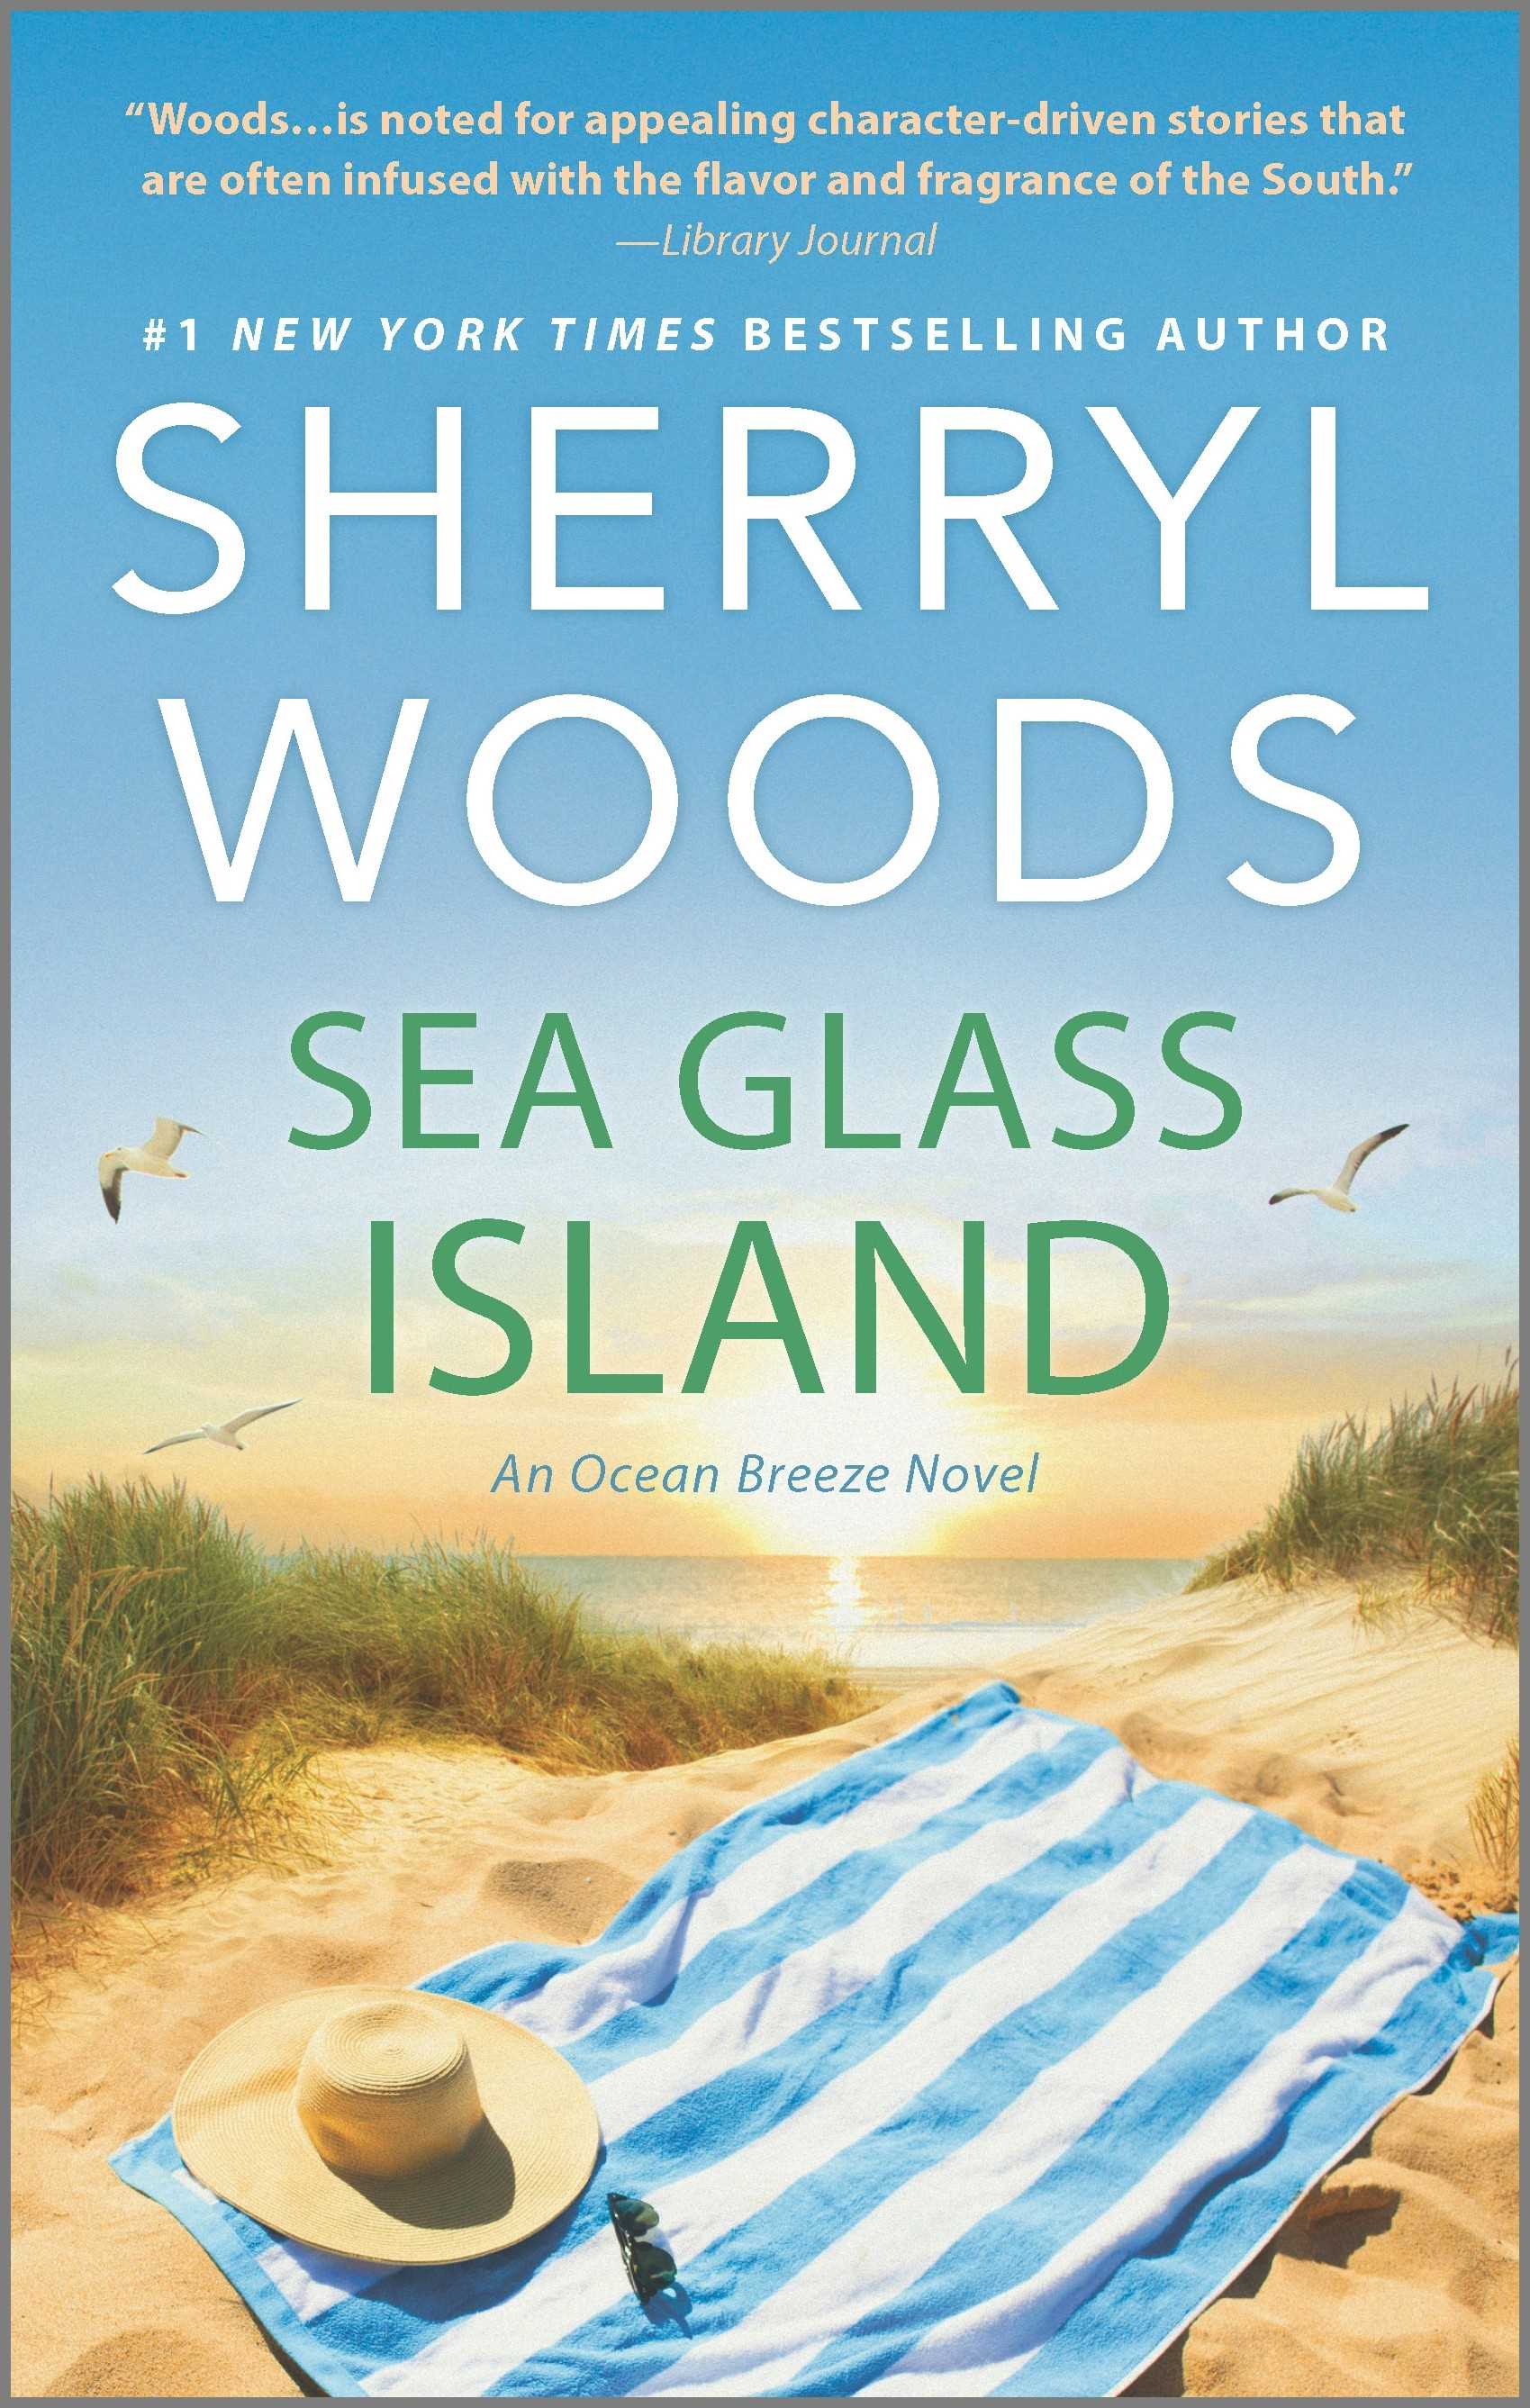 Sea Glass Island (An Ocean Breeze Novel)